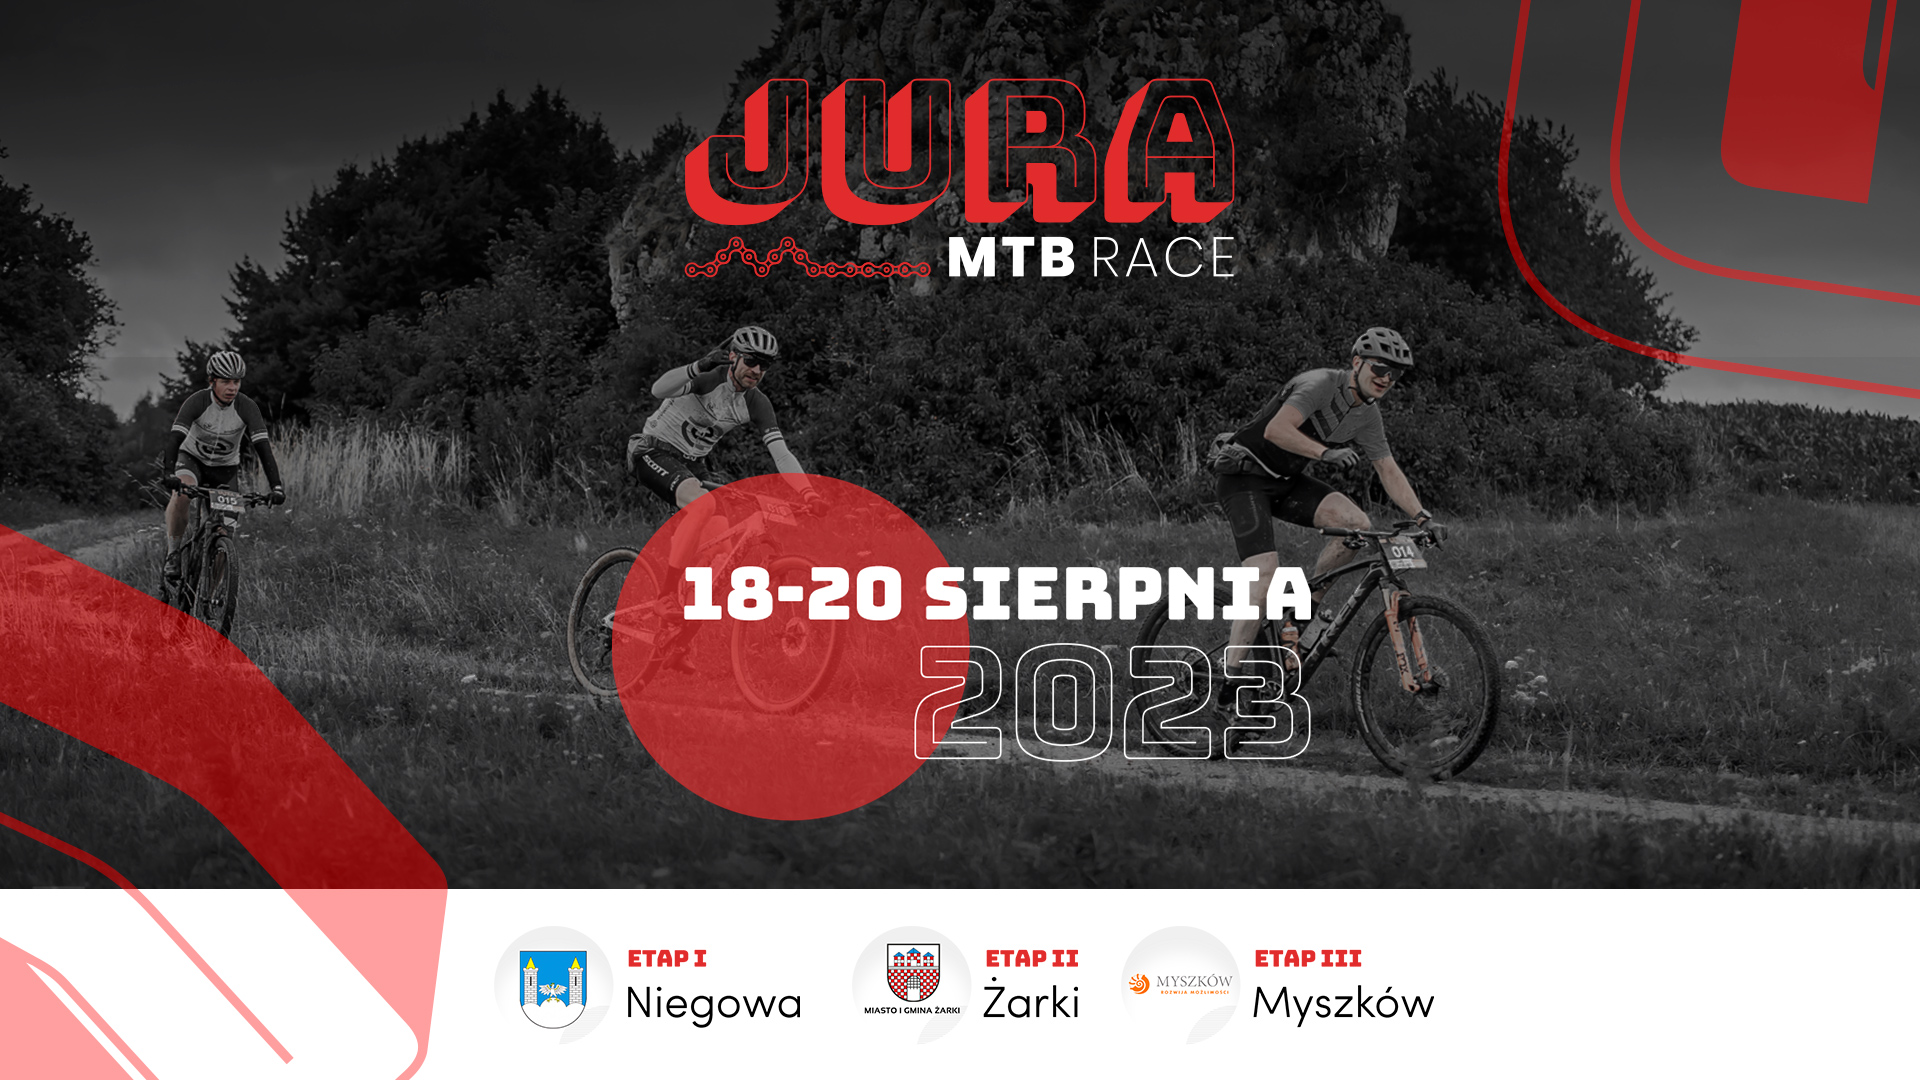 Jura MTB Race